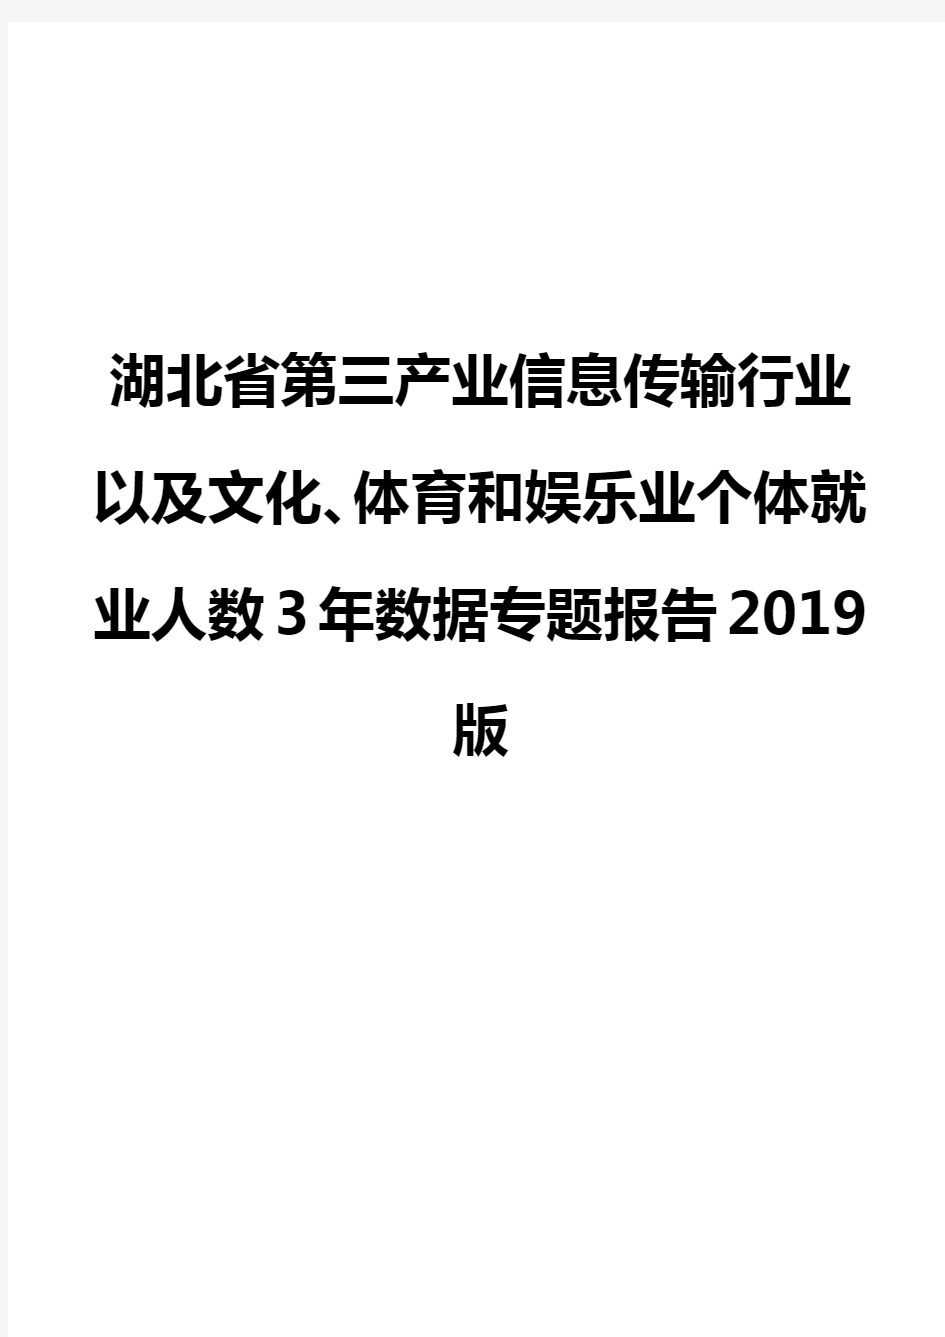 湖北省第三产业信息传输行业以及文化、体育和娱乐业个体就业人数3年数据专题报告2019版